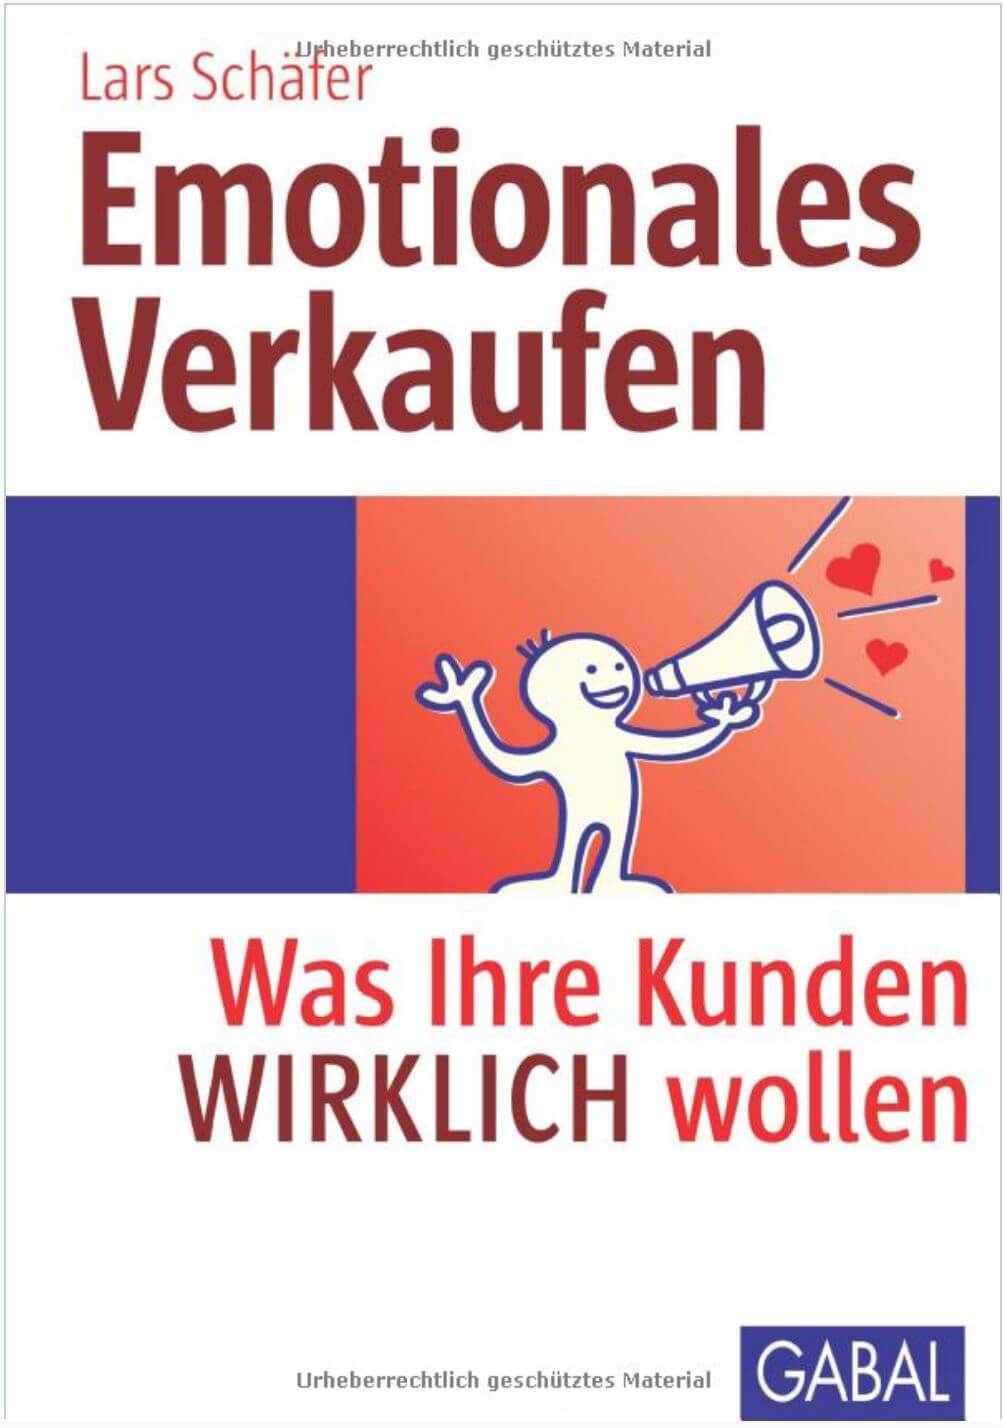 Buchcover mit dem Titel "Emotionales Verkaufen: Was Ihre Kunden wirklich wollen" von Lars Schäfer, mit einem Strichmännchen mit Megafon und Herzen als Symbol für emotionale Verkaufskonzepte